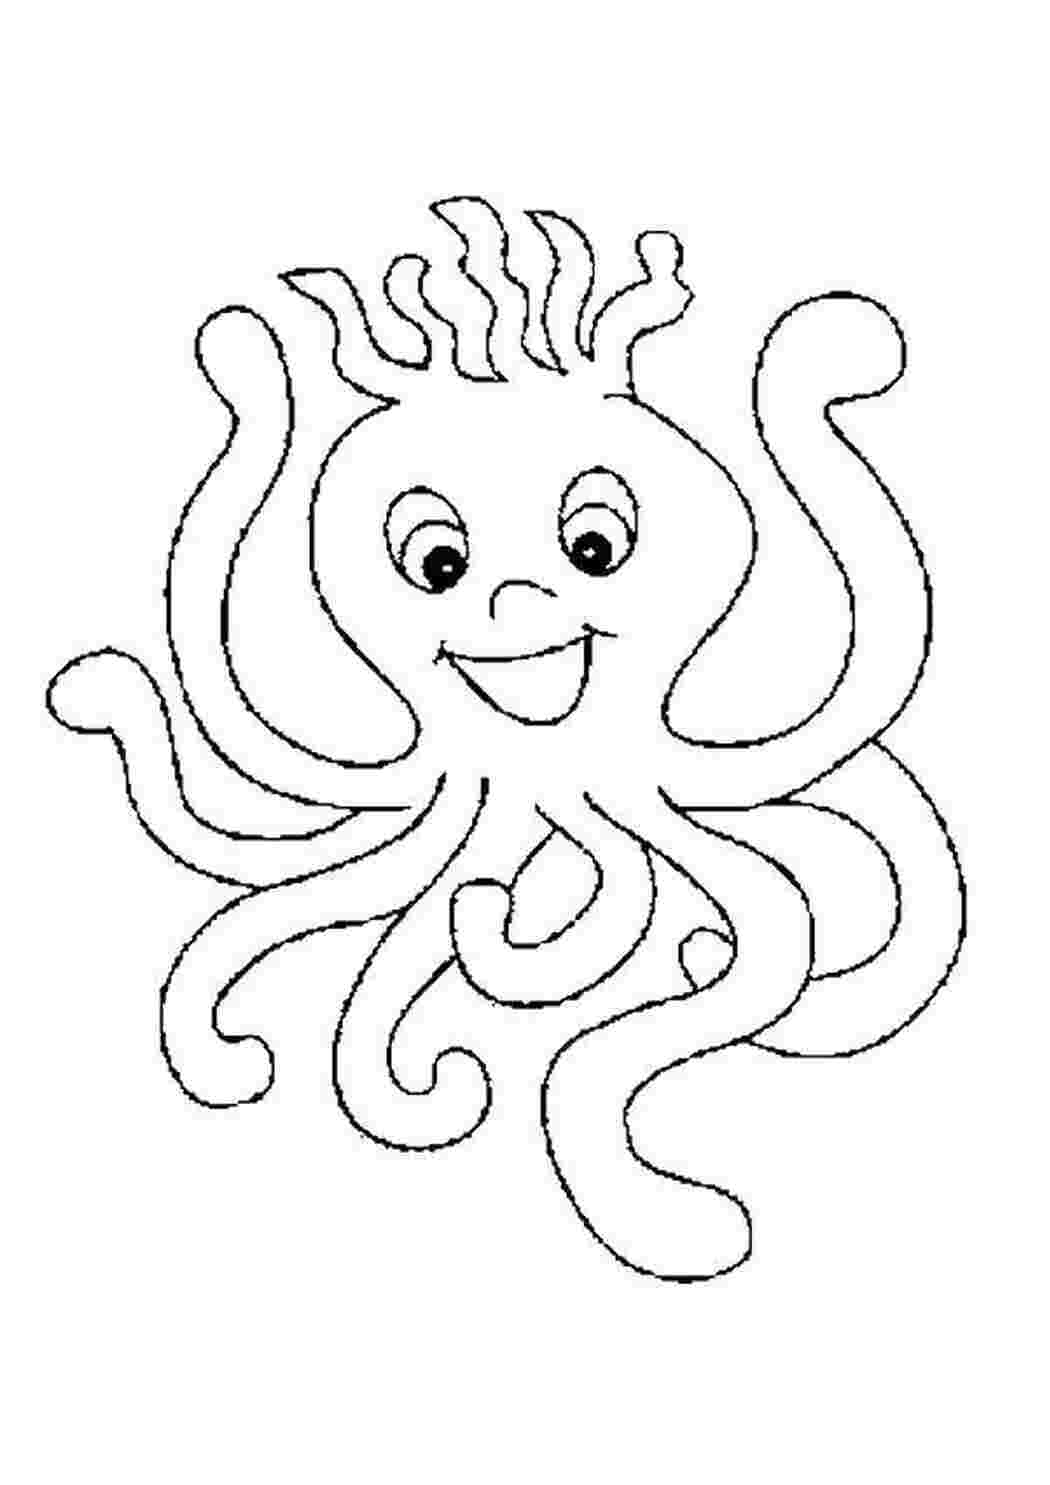 Раскраска осьминог для детей 3-4 лет